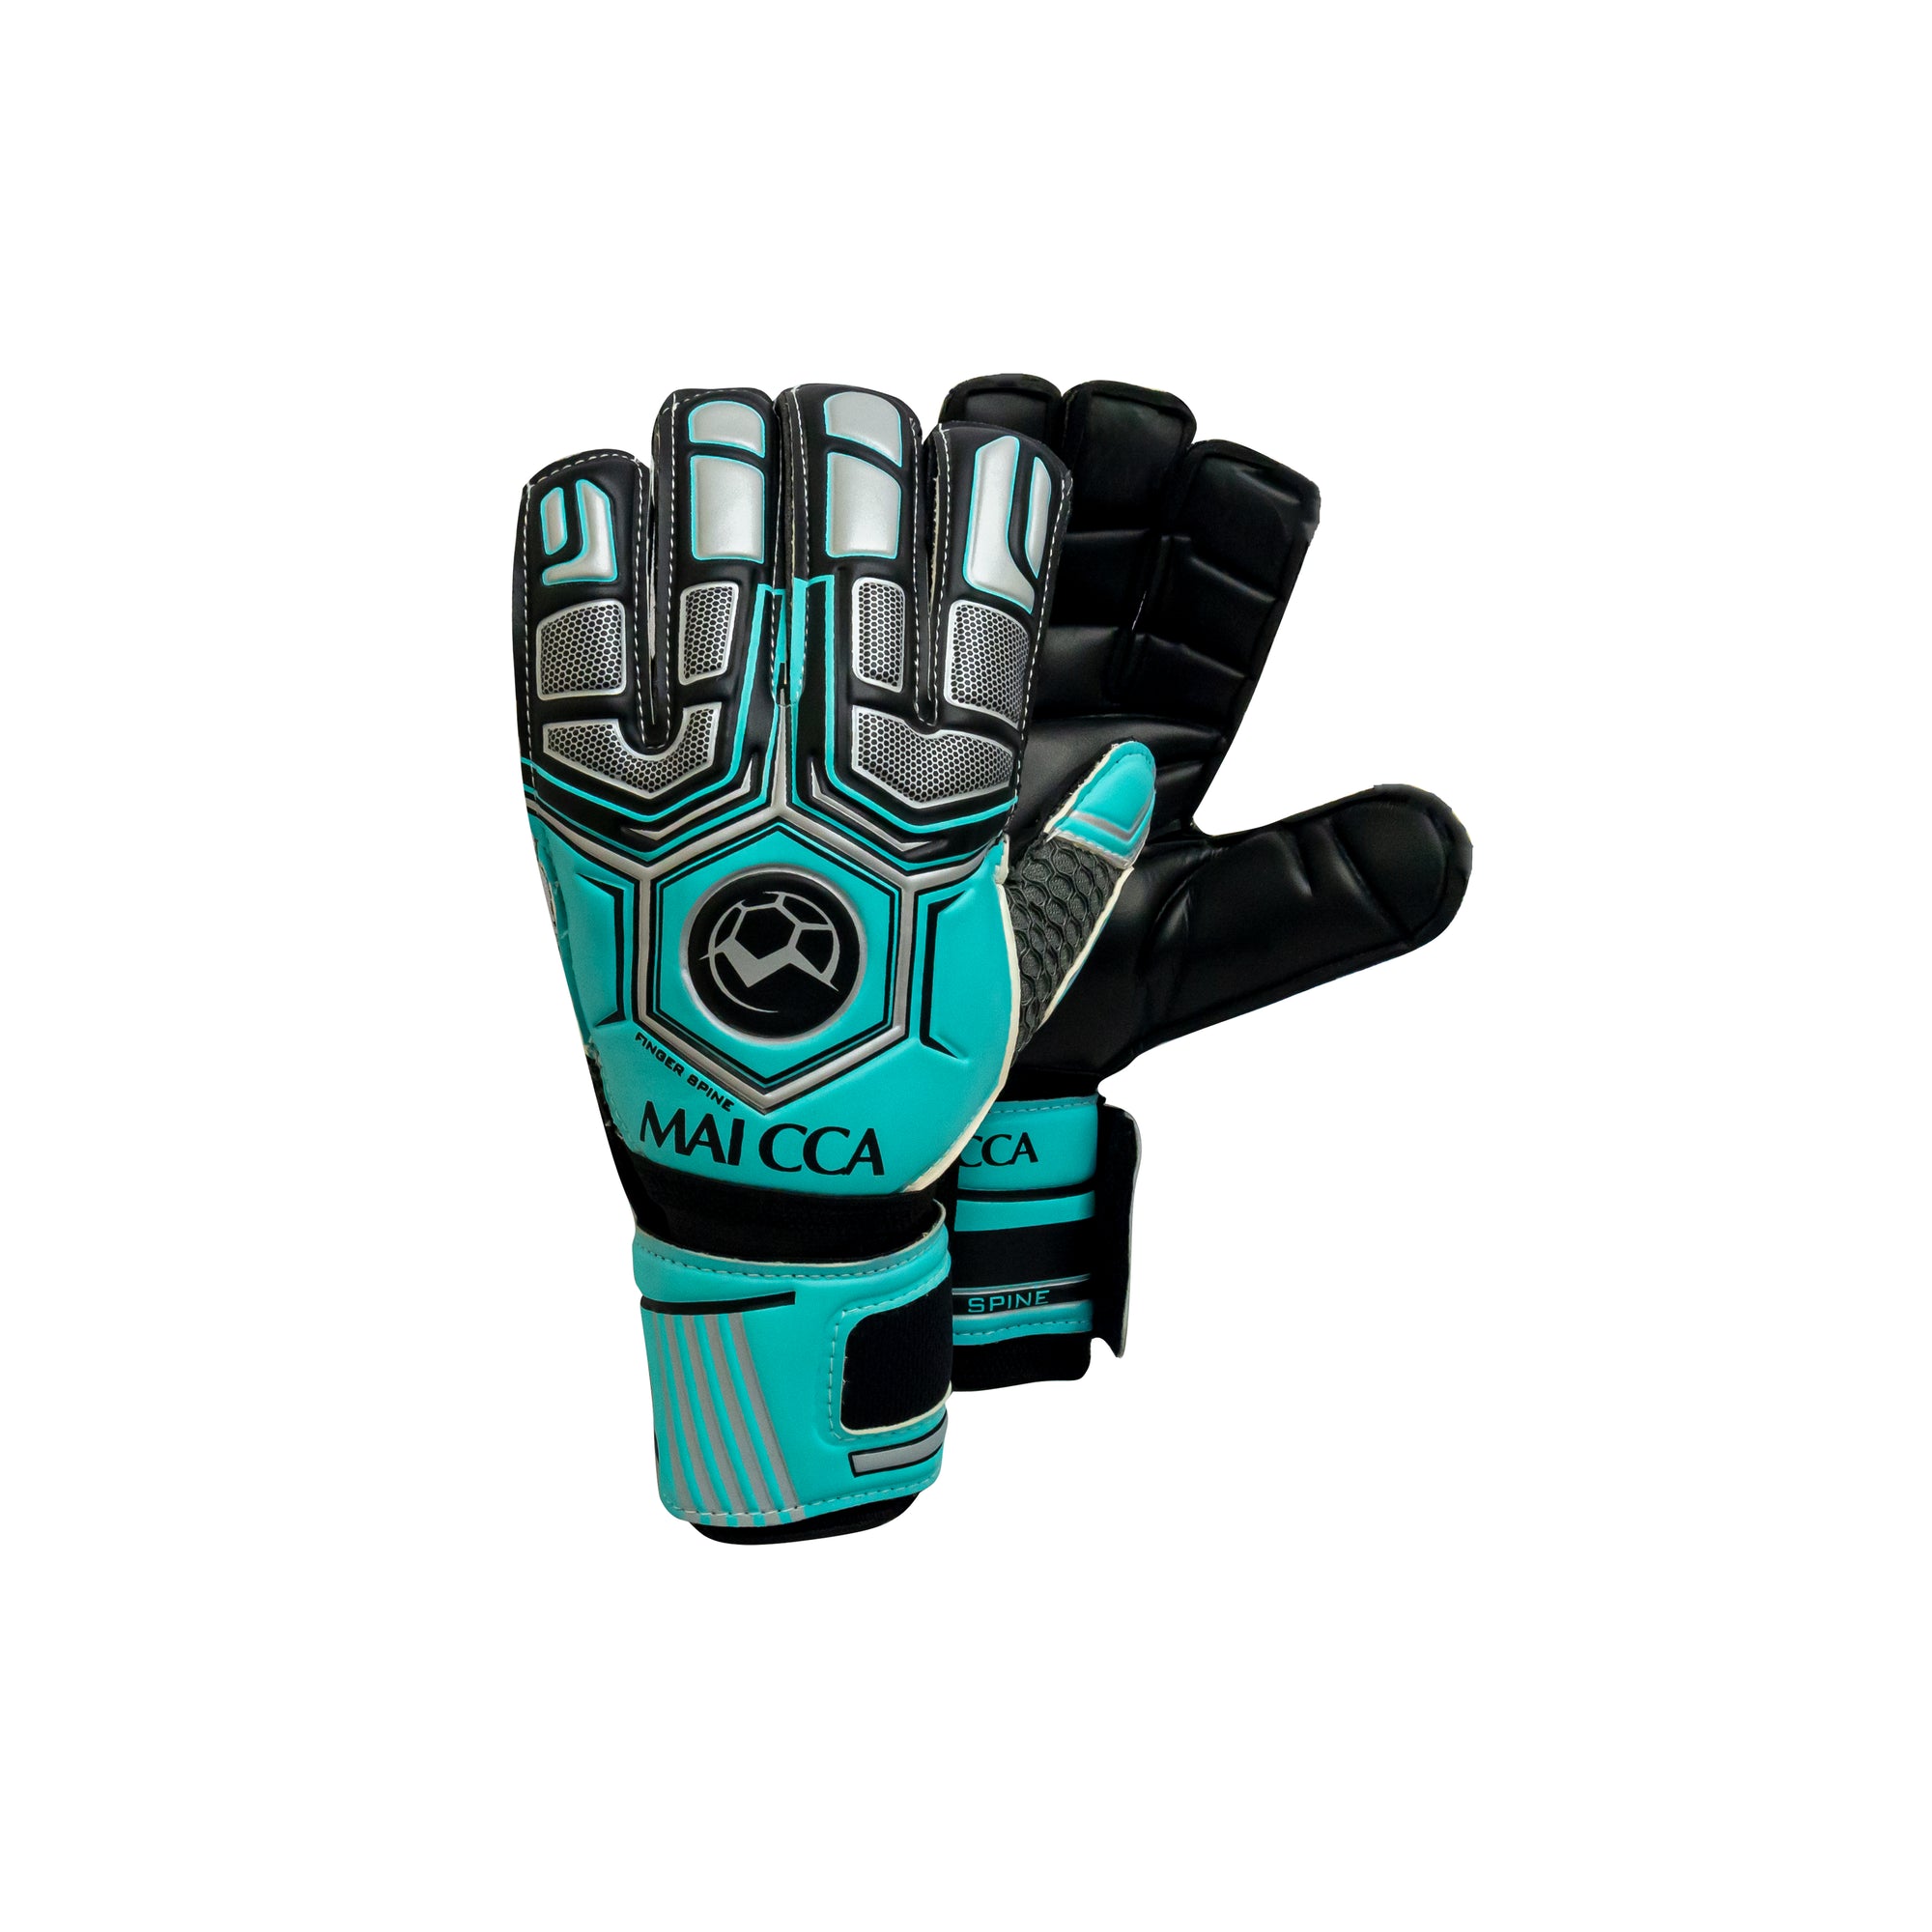 Finger Spine Goalkeeper Gloves Teal/Silver